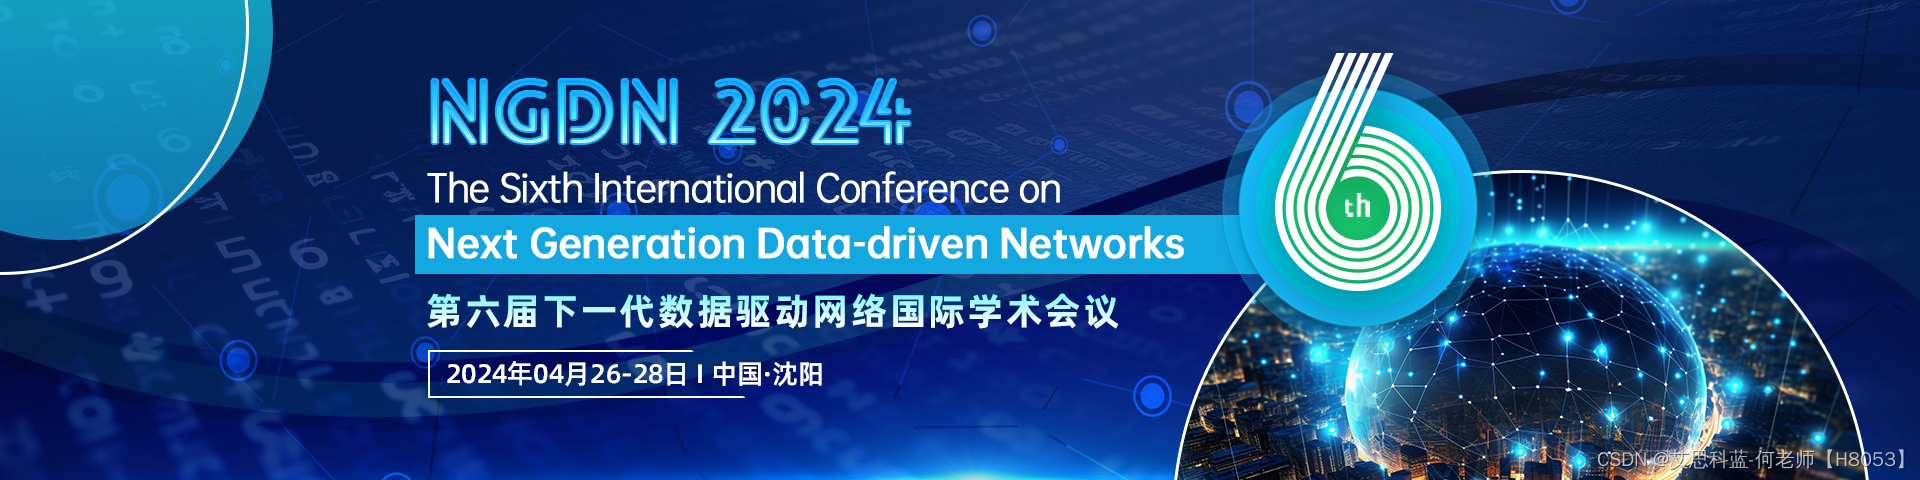 【预计IEEE出版|EI征稿通知】第六届下一代数据驱动网络国际学术会议 (NGDN 2024)